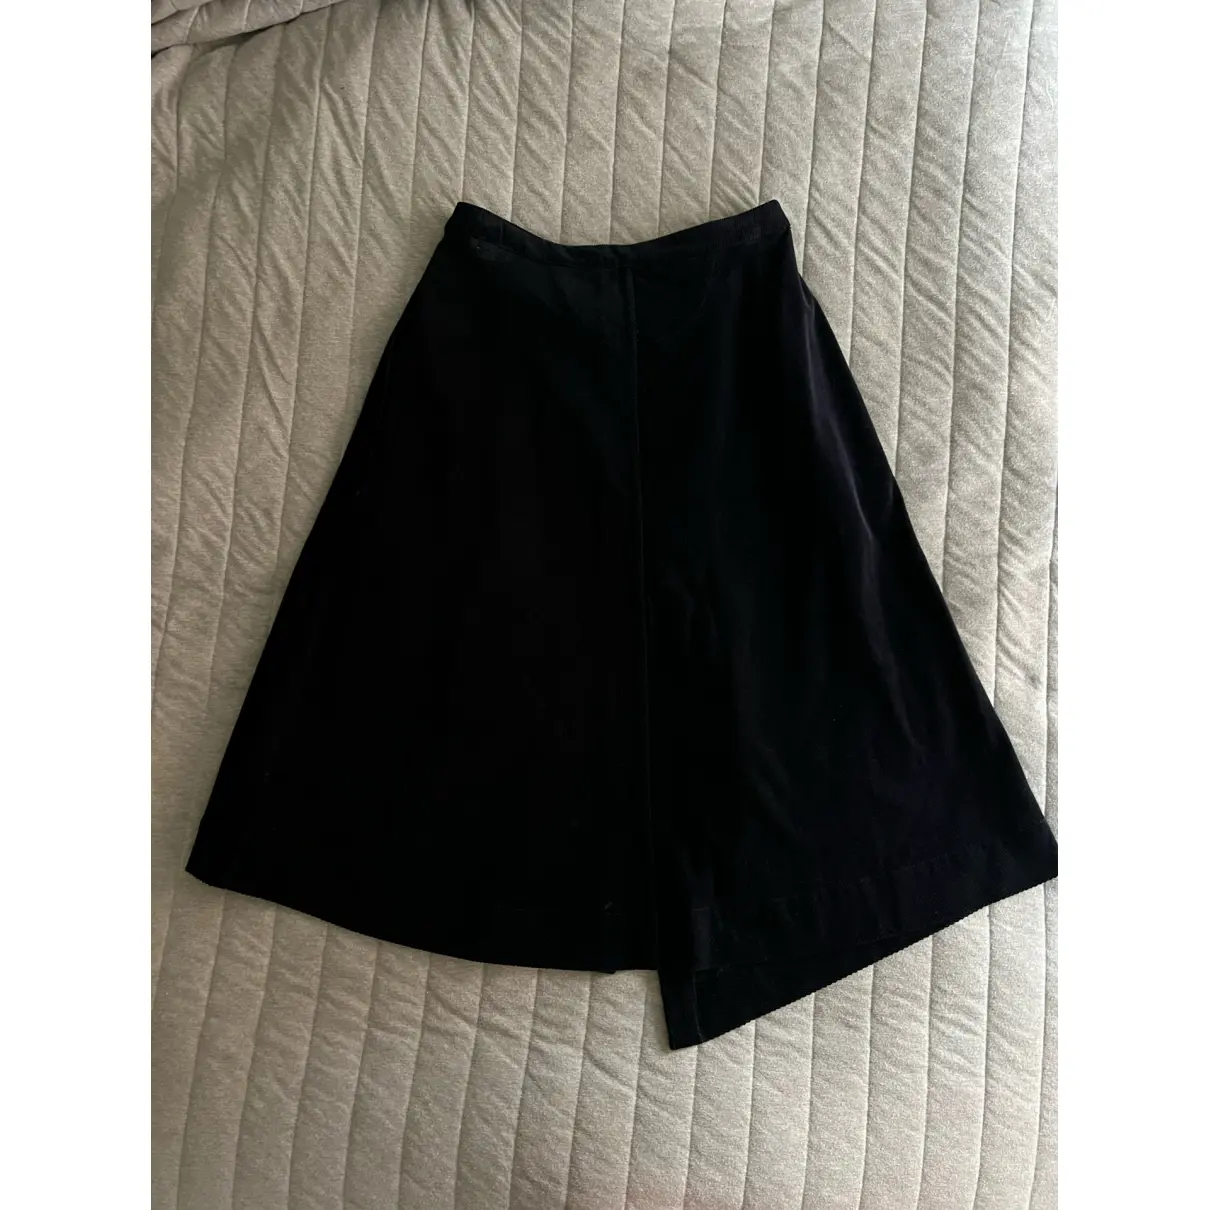 Buy Acne Studios Velvet mid-length skirt online